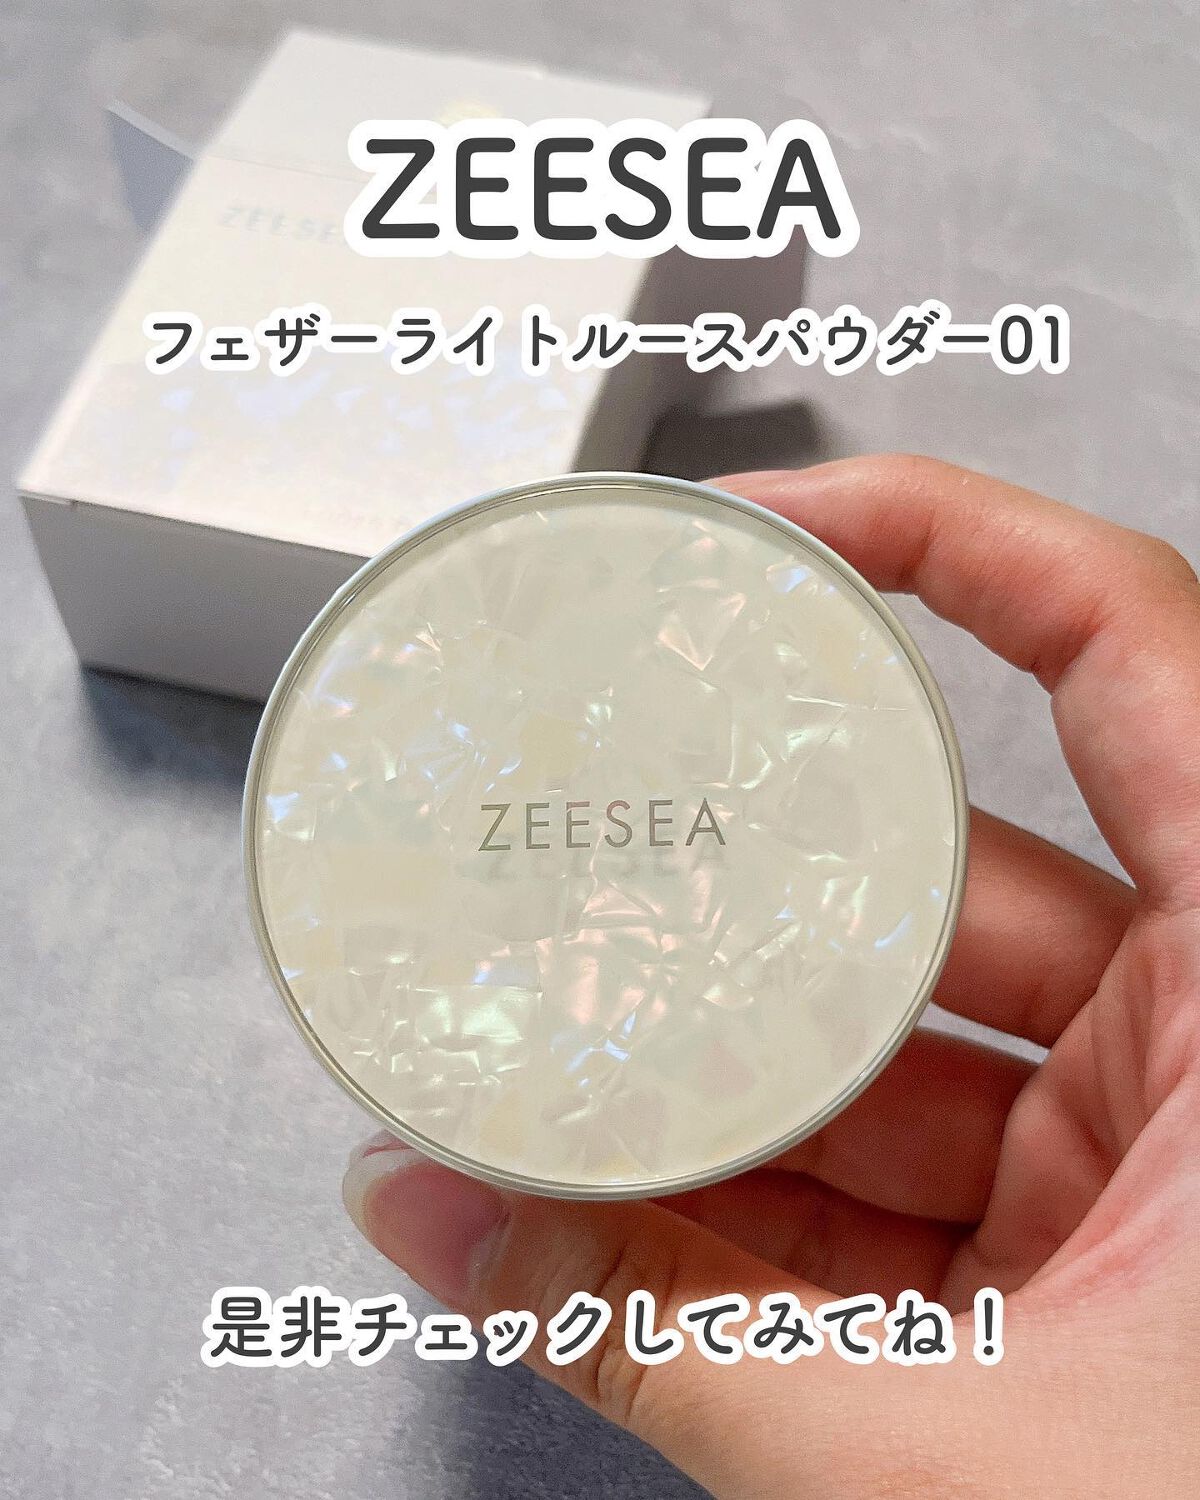 ZEESEA フェザーライトルースパウダー 01  ゼロ粉感皮脂コントロール